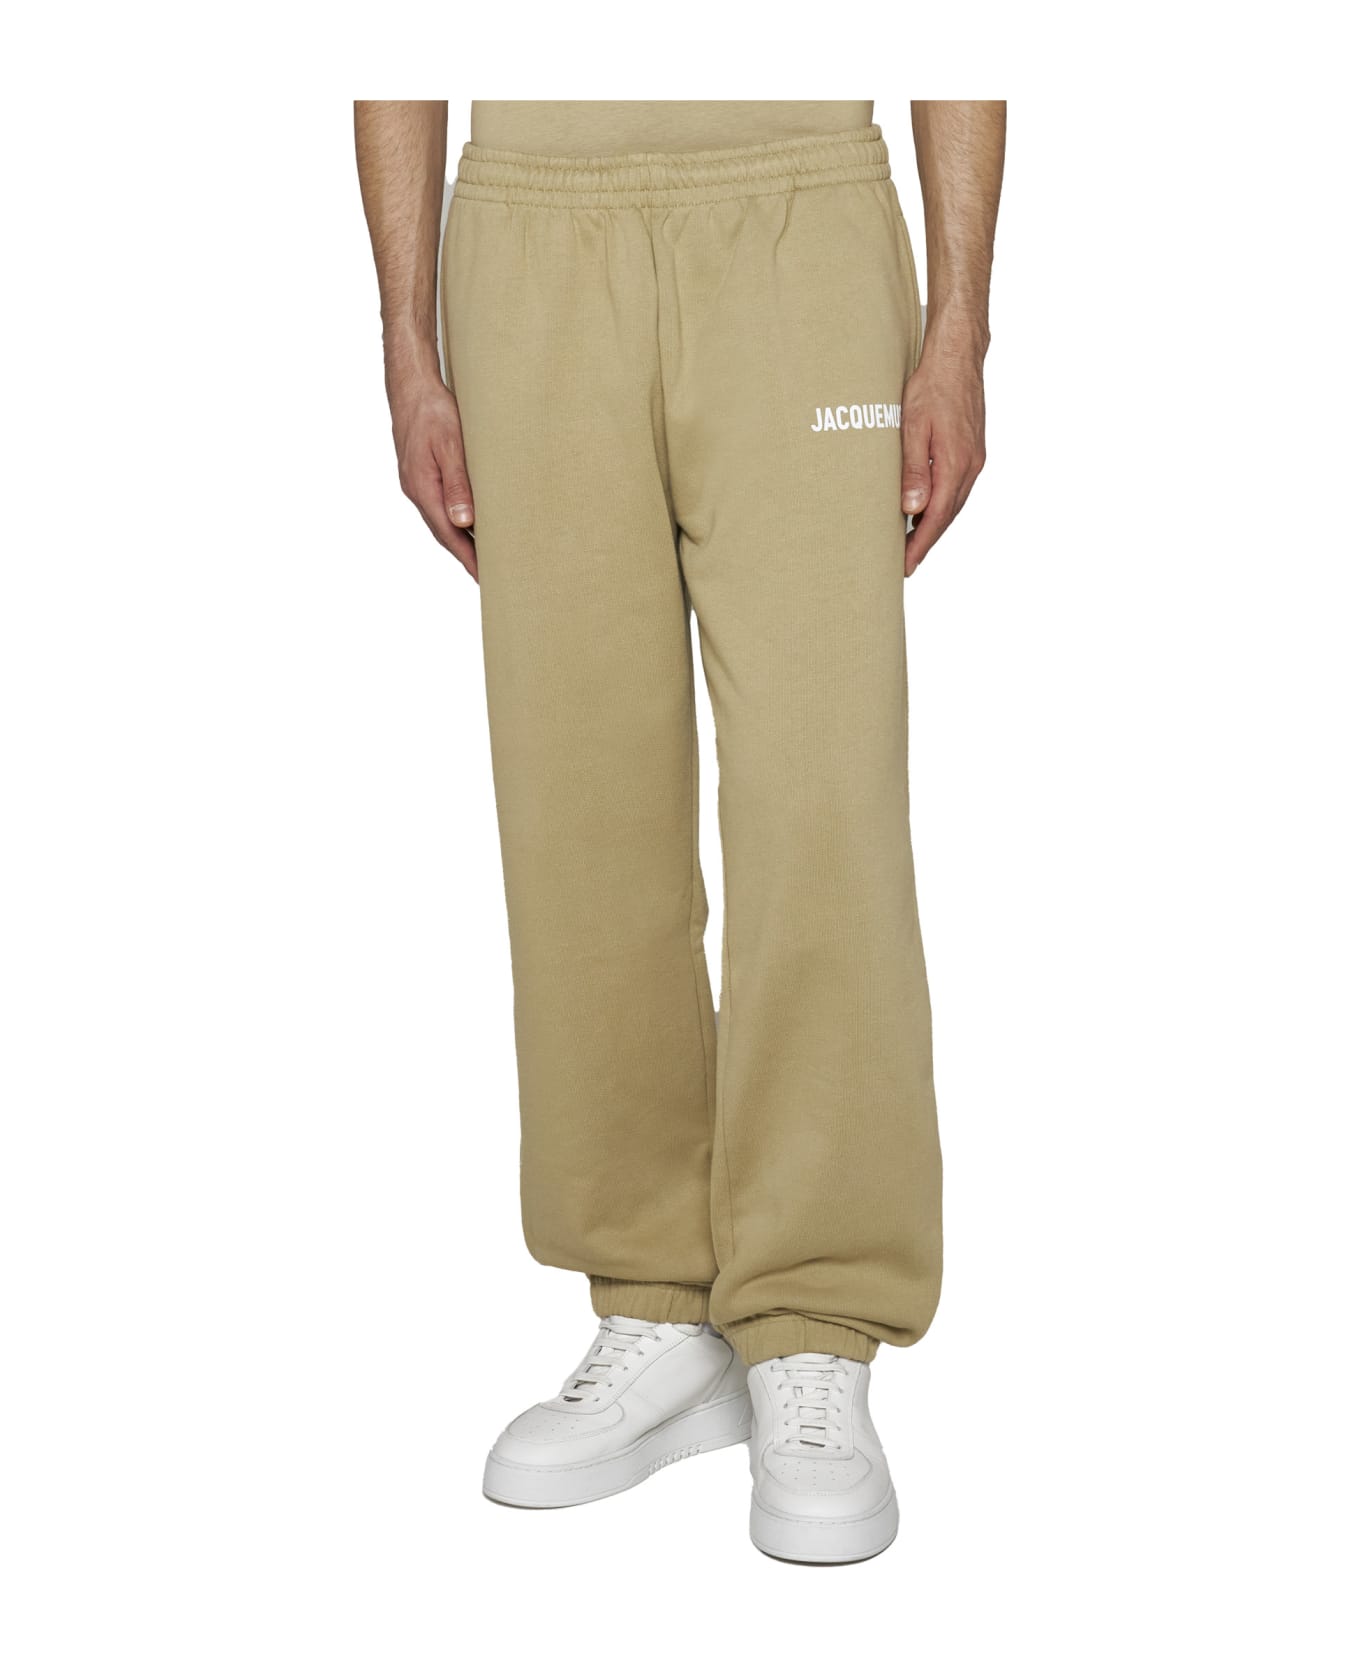 Jacquemus Logo Cotton Jogging Trousers - Light khaki